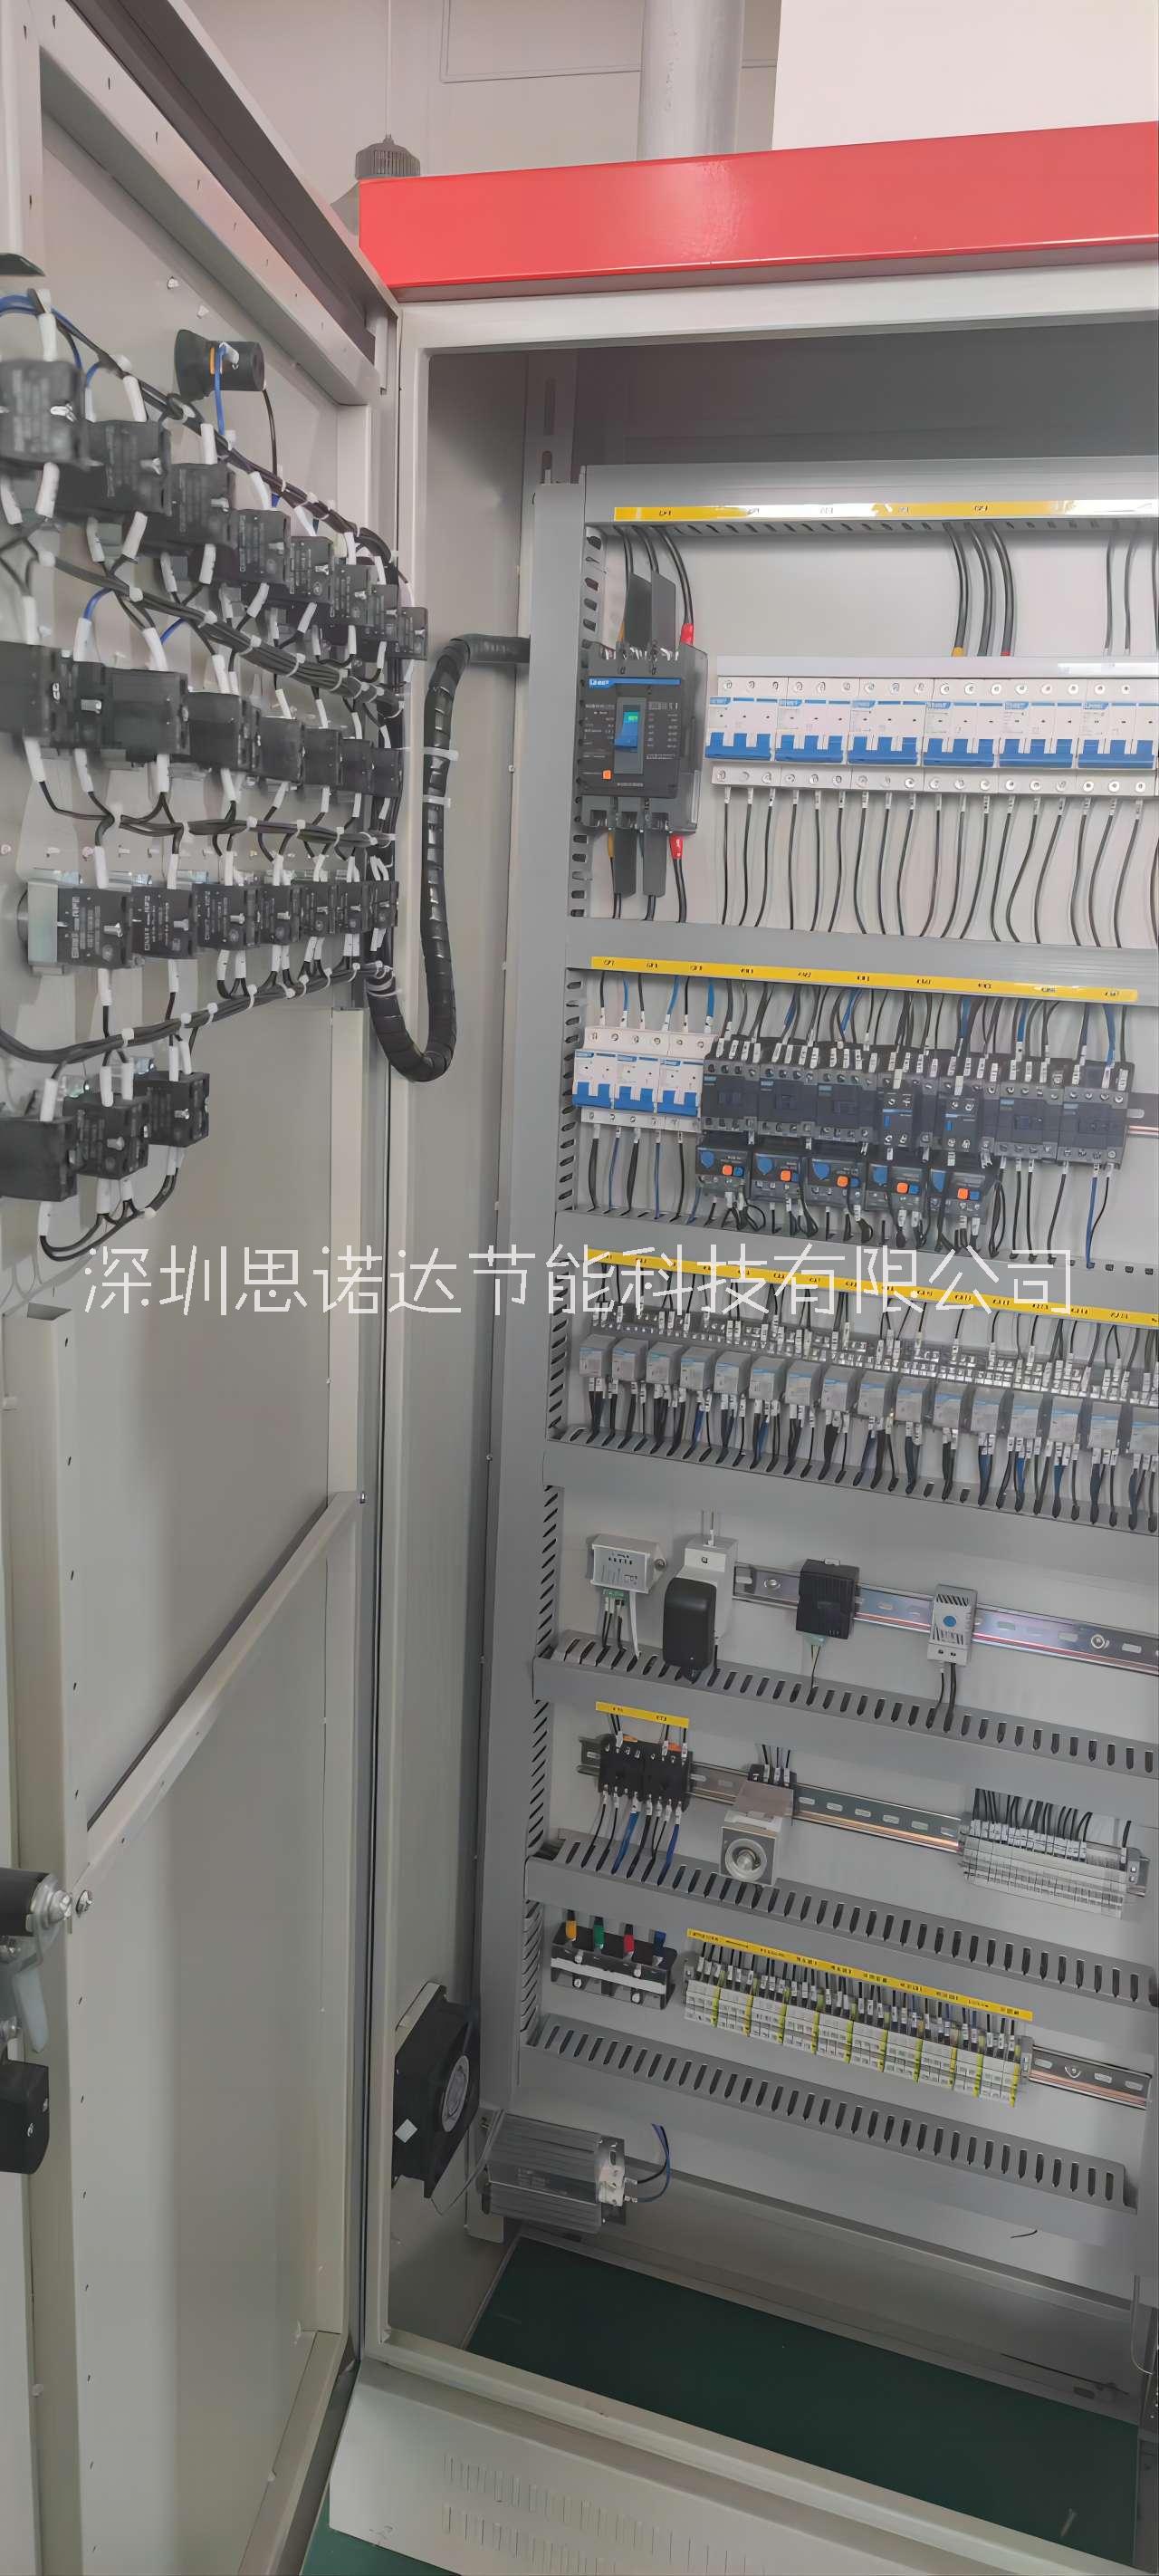 成套PLC控制系统供应商 电箱控制柜厂家定制 重庆思诺达成套PLC控制系统供应商 电箱控制柜厂家定制图片